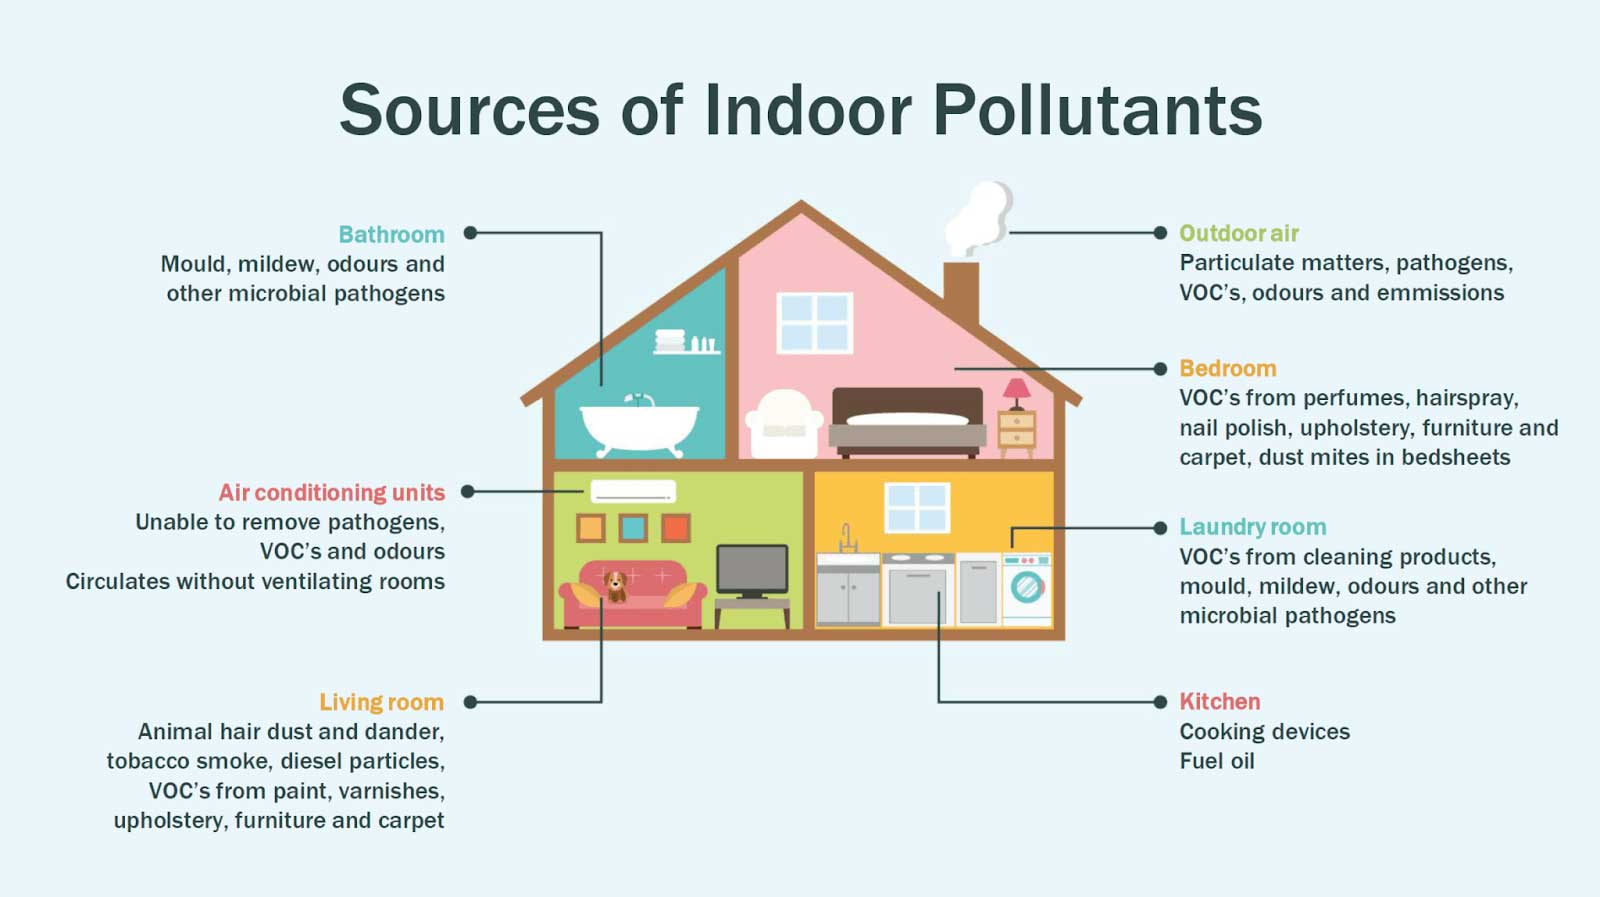 Sources of indoor pollutants